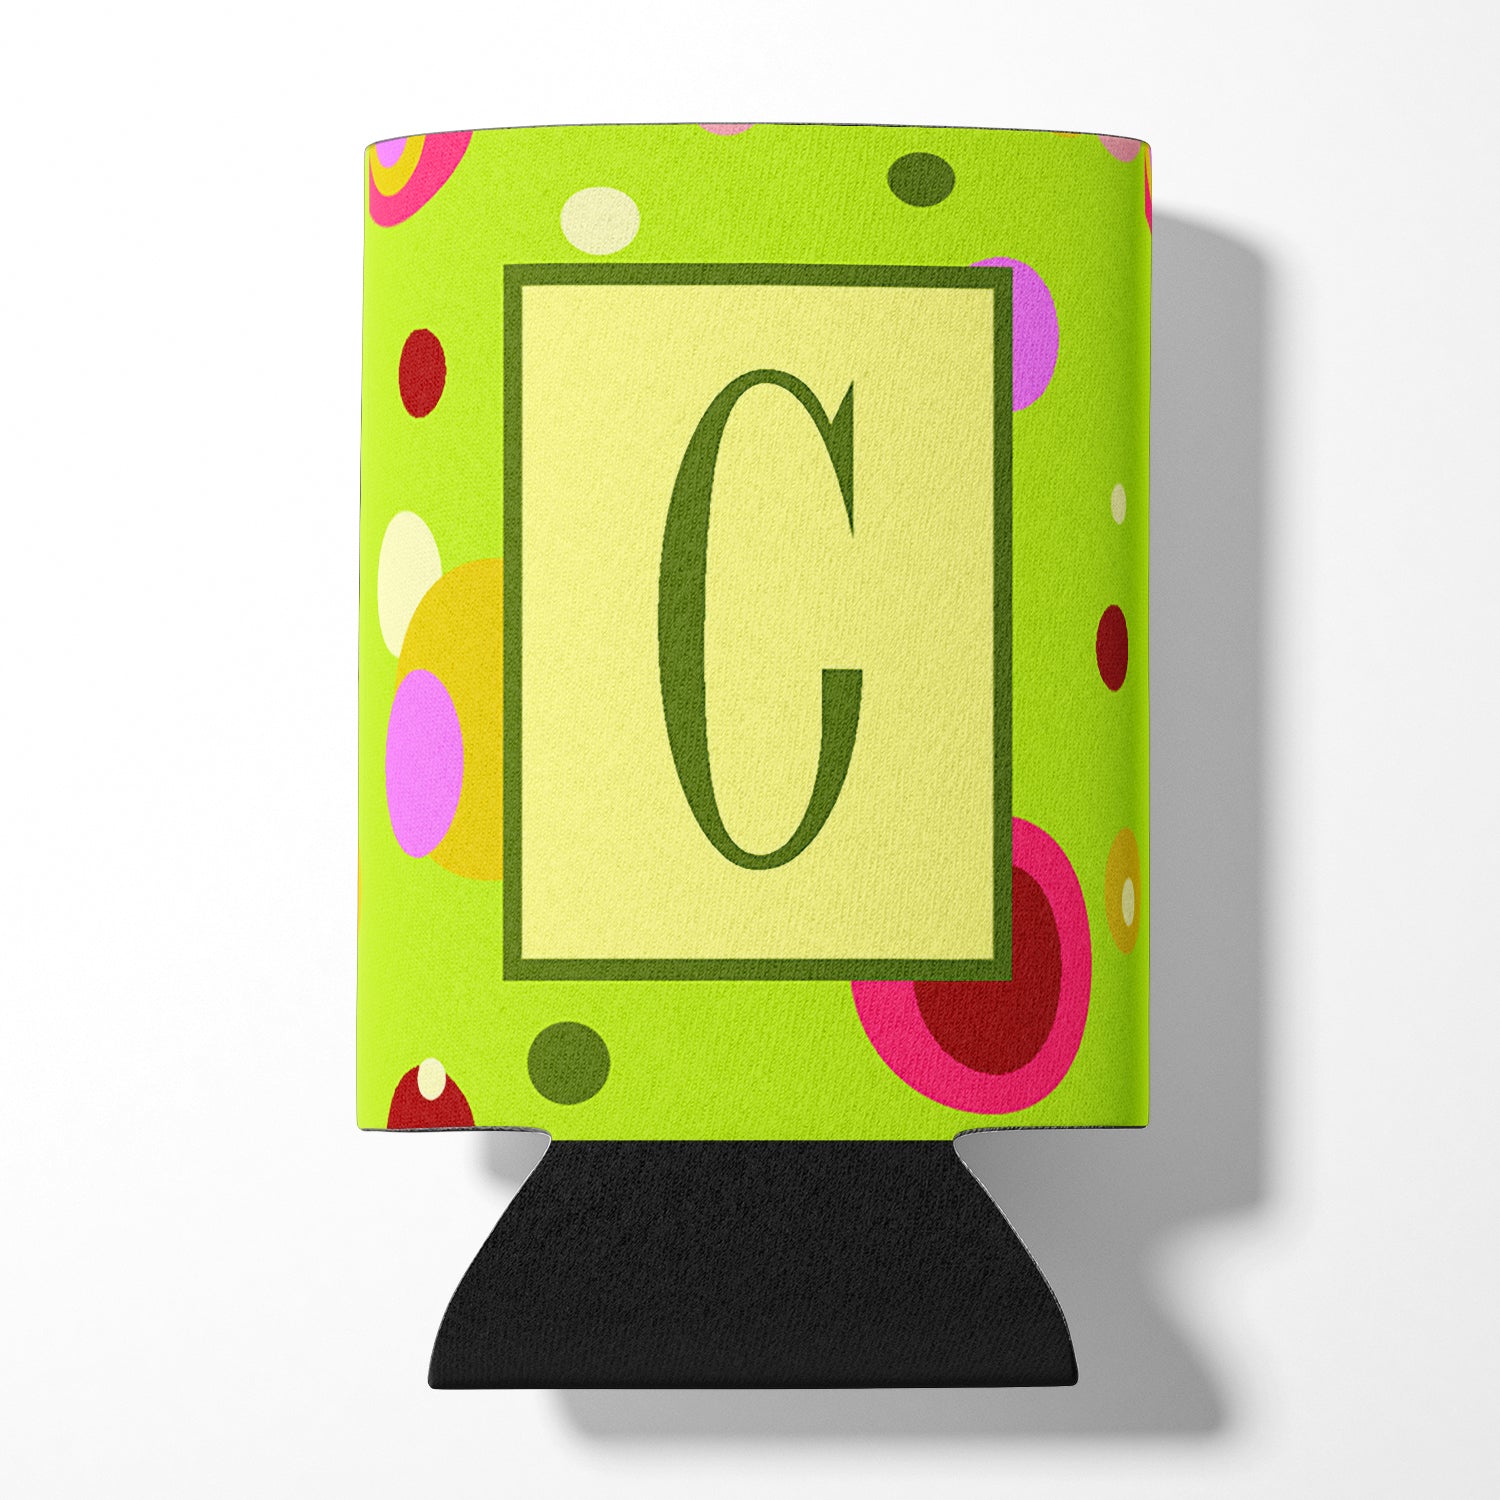 Letter C Initial Monogram - Green Can or Bottle Beverage Insulator Hugger